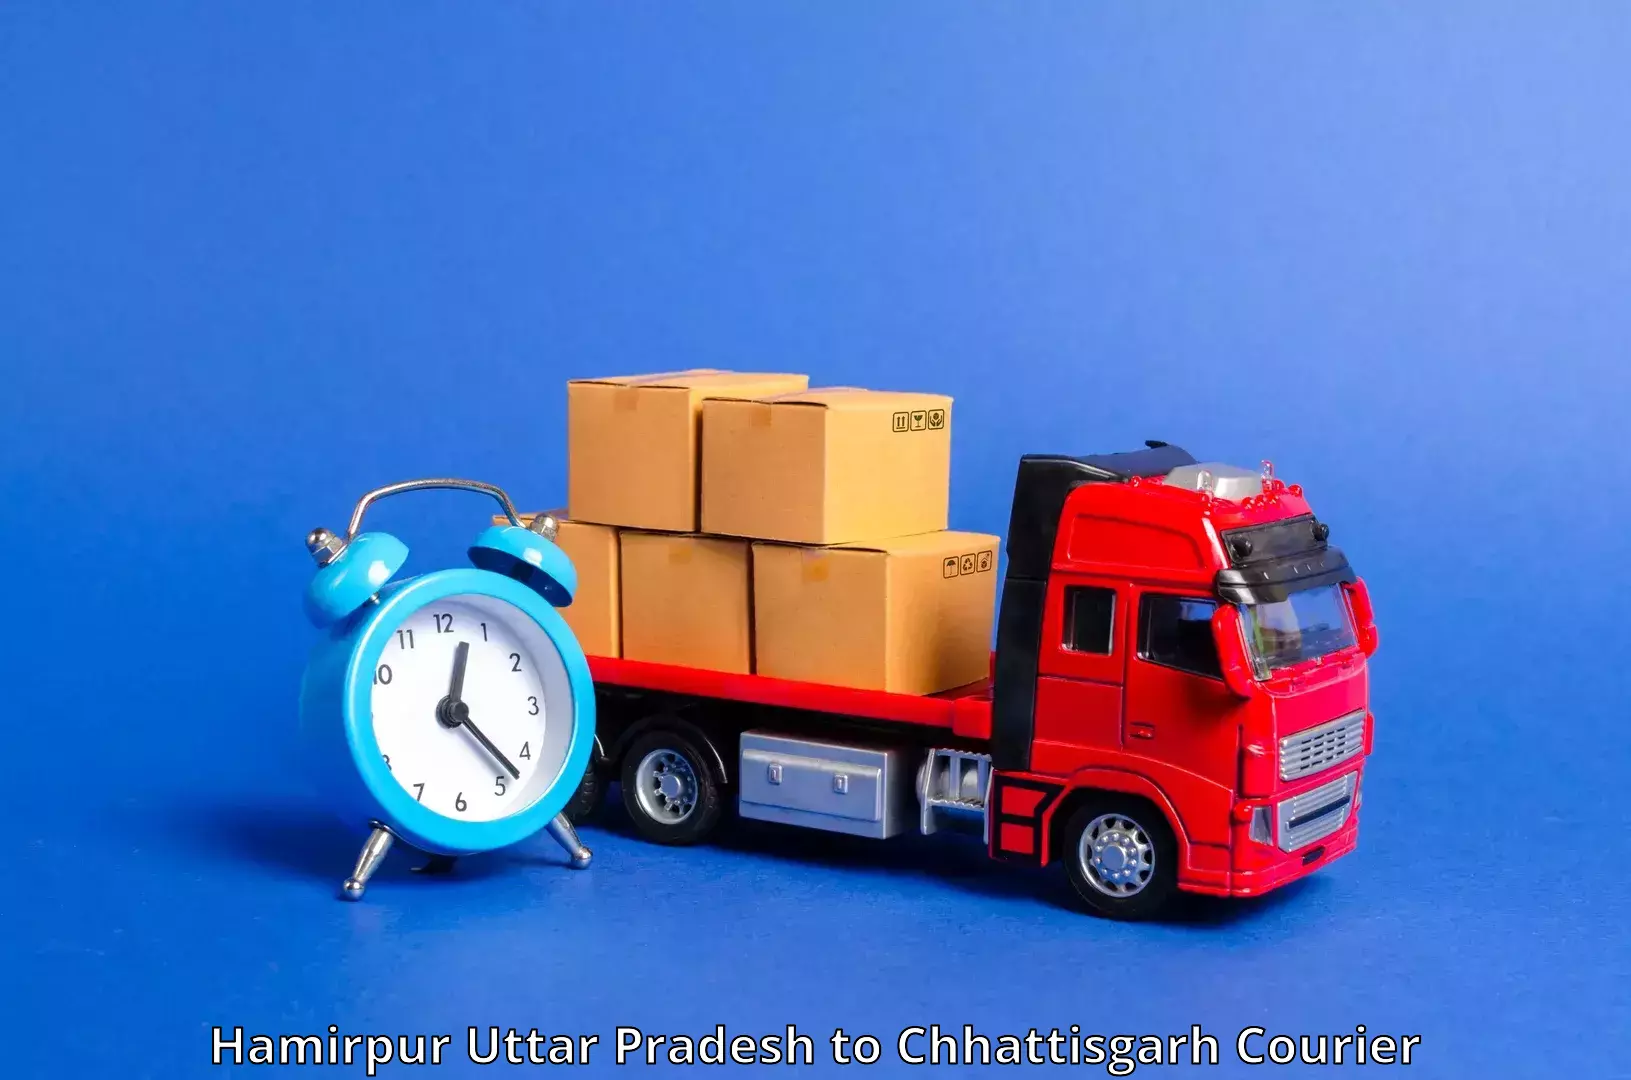 Next-generation courier services Hamirpur Uttar Pradesh to Bastar